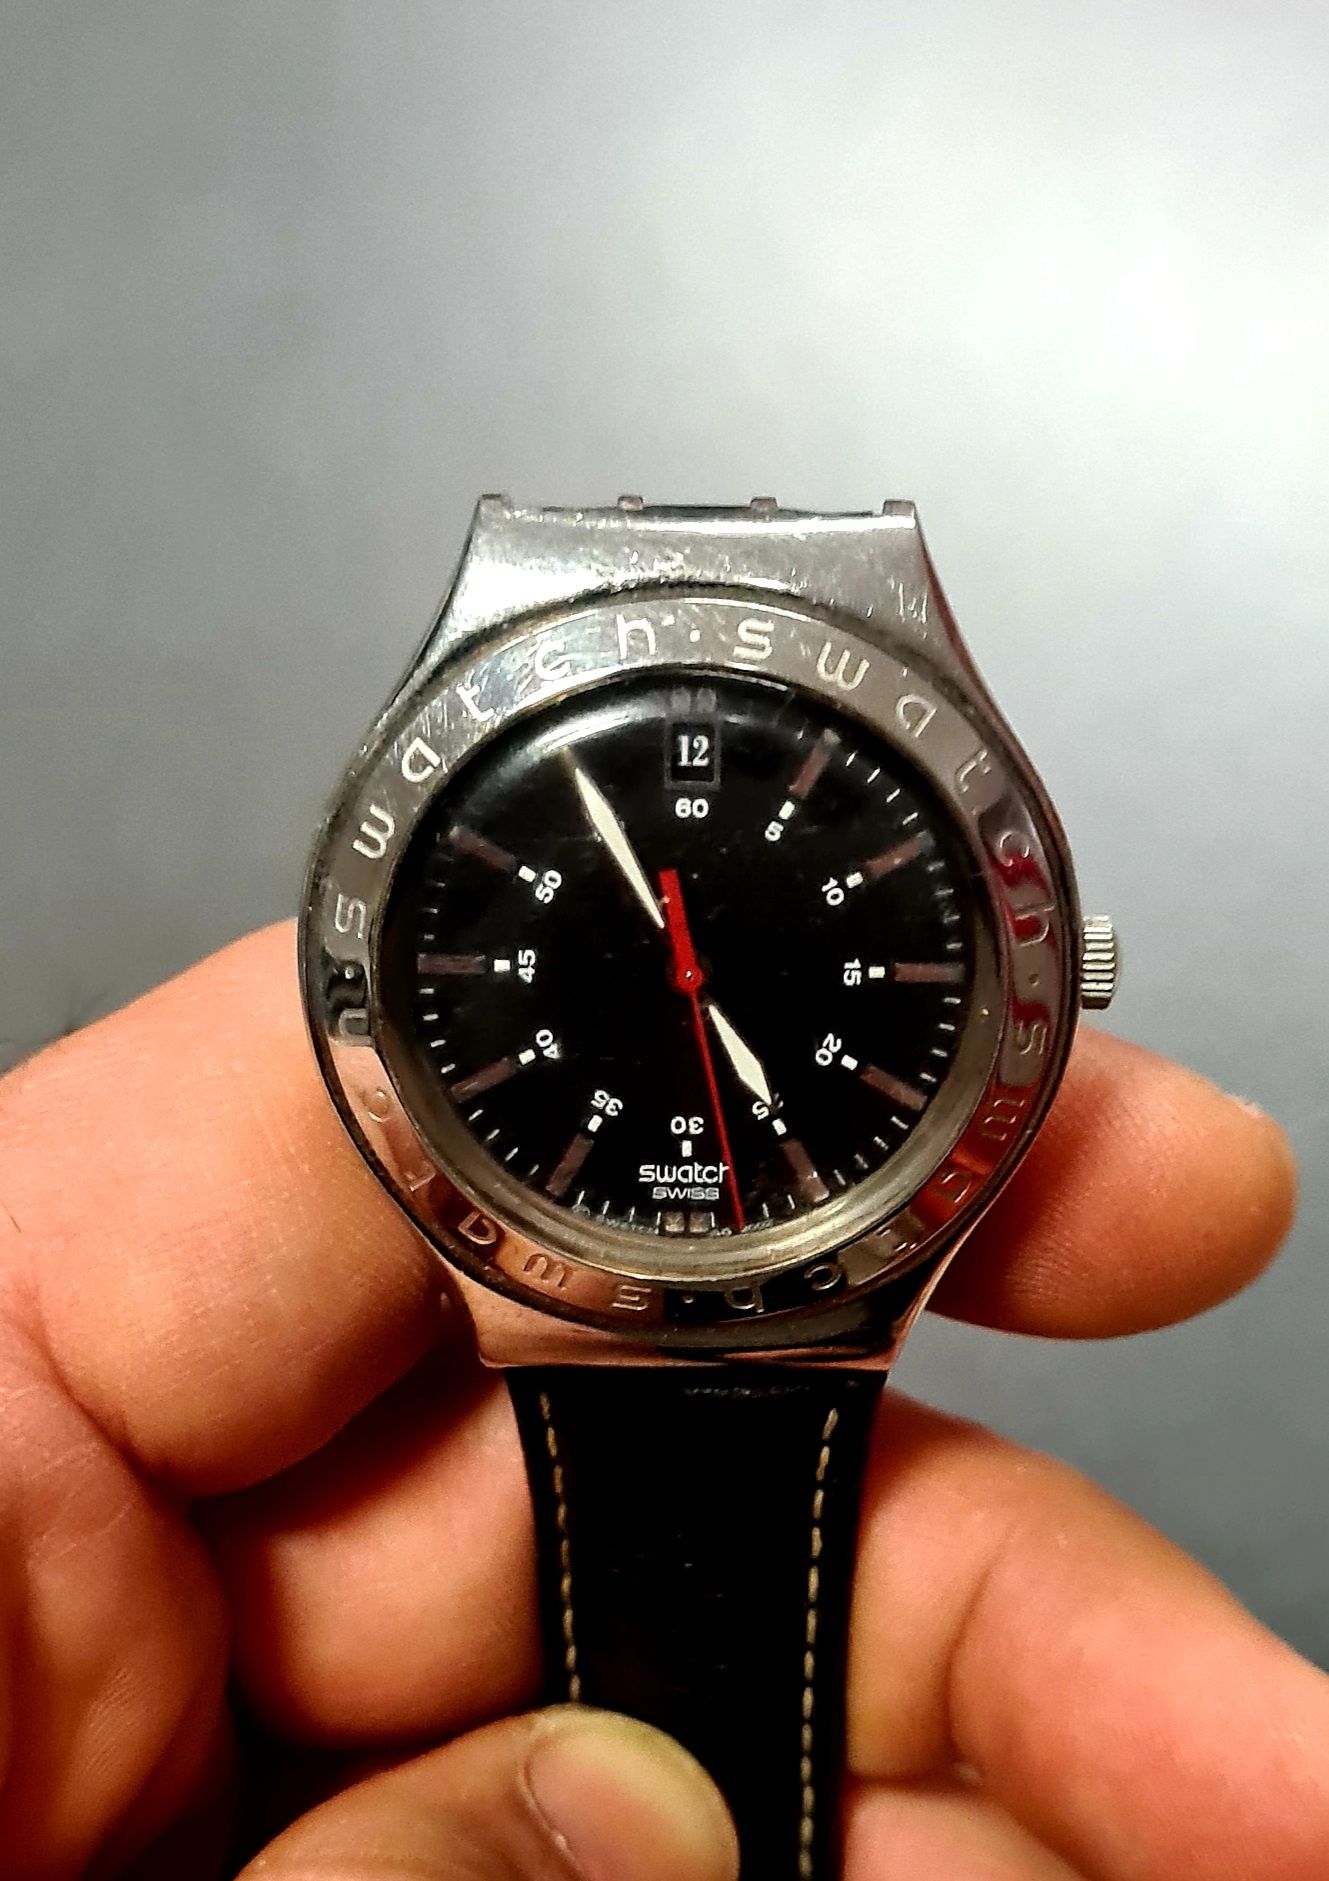 Ceasuri originale Swatch, diverse modele